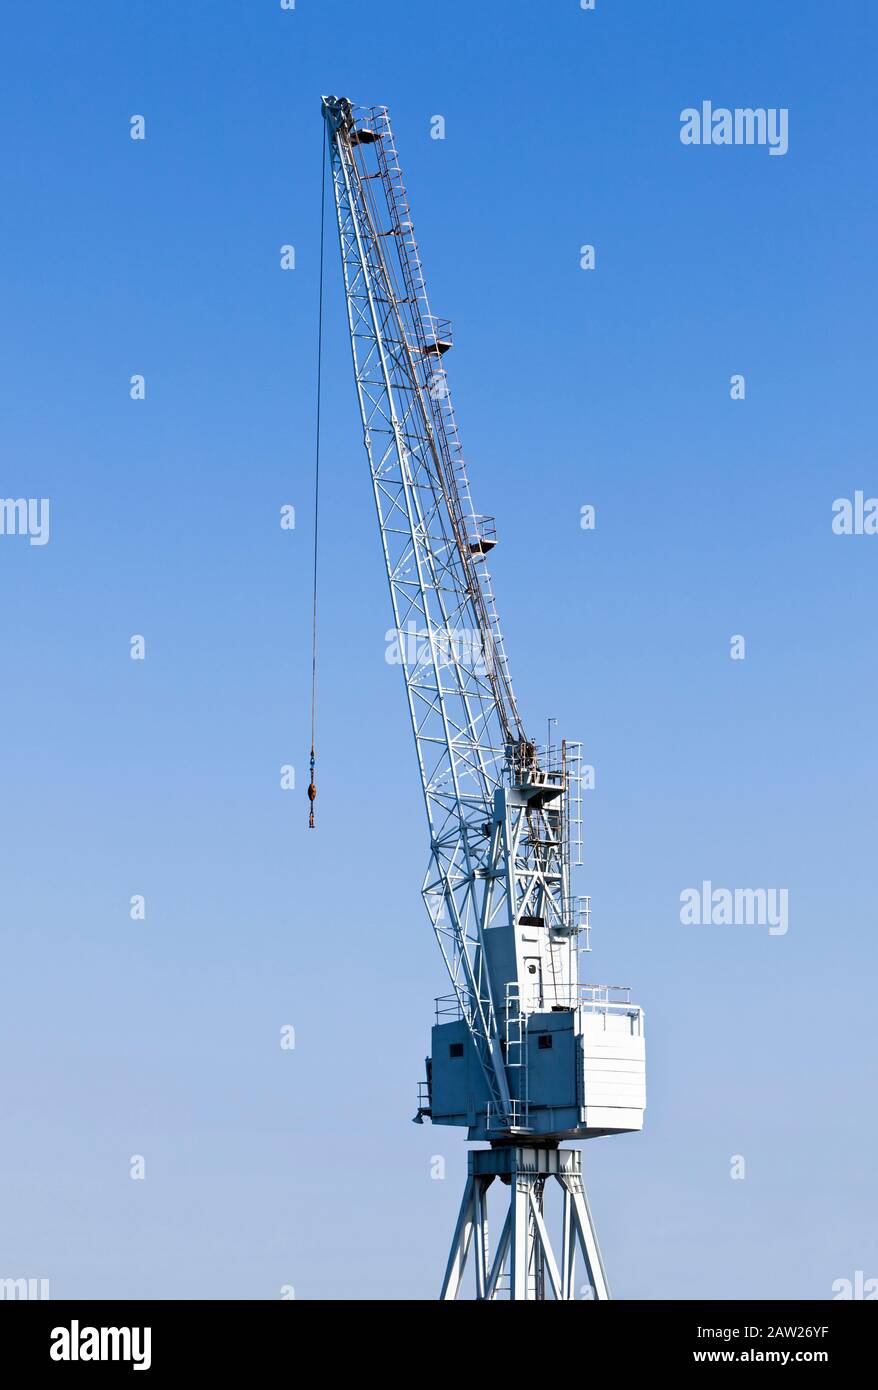 Nahaufnahme eines Industrie-Hafenkrans, der gegen einen blauen Himmel isoliert ist Stockfoto